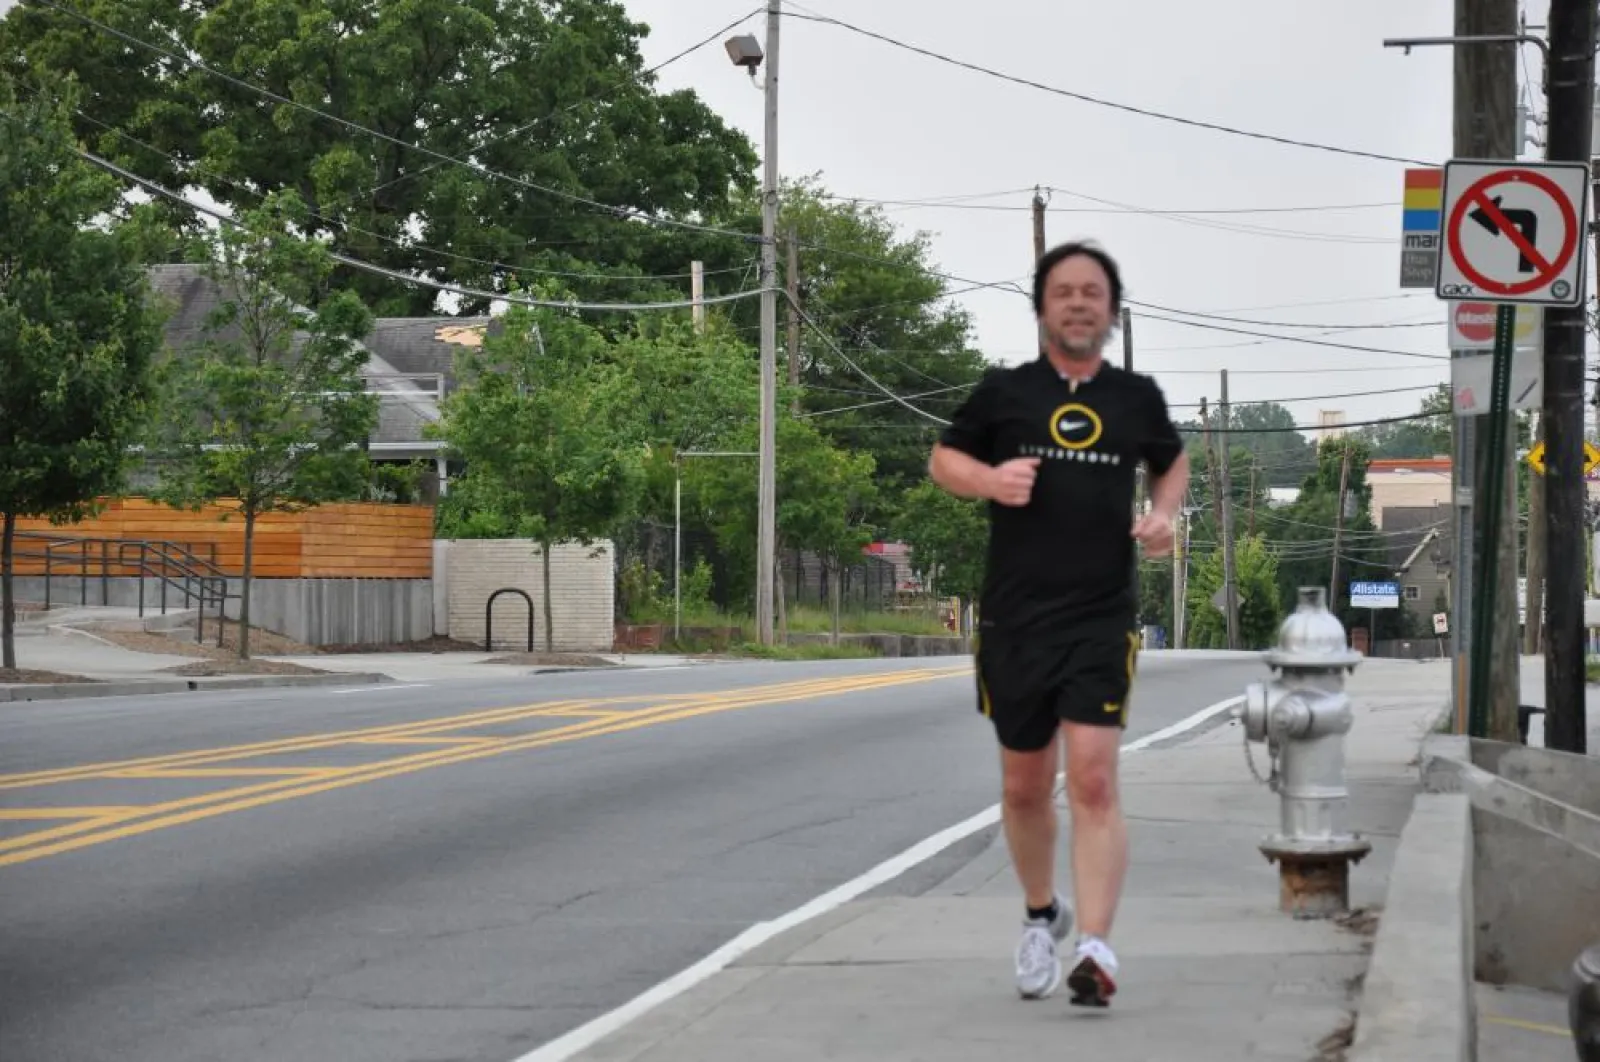 Craig running on a sidewalk